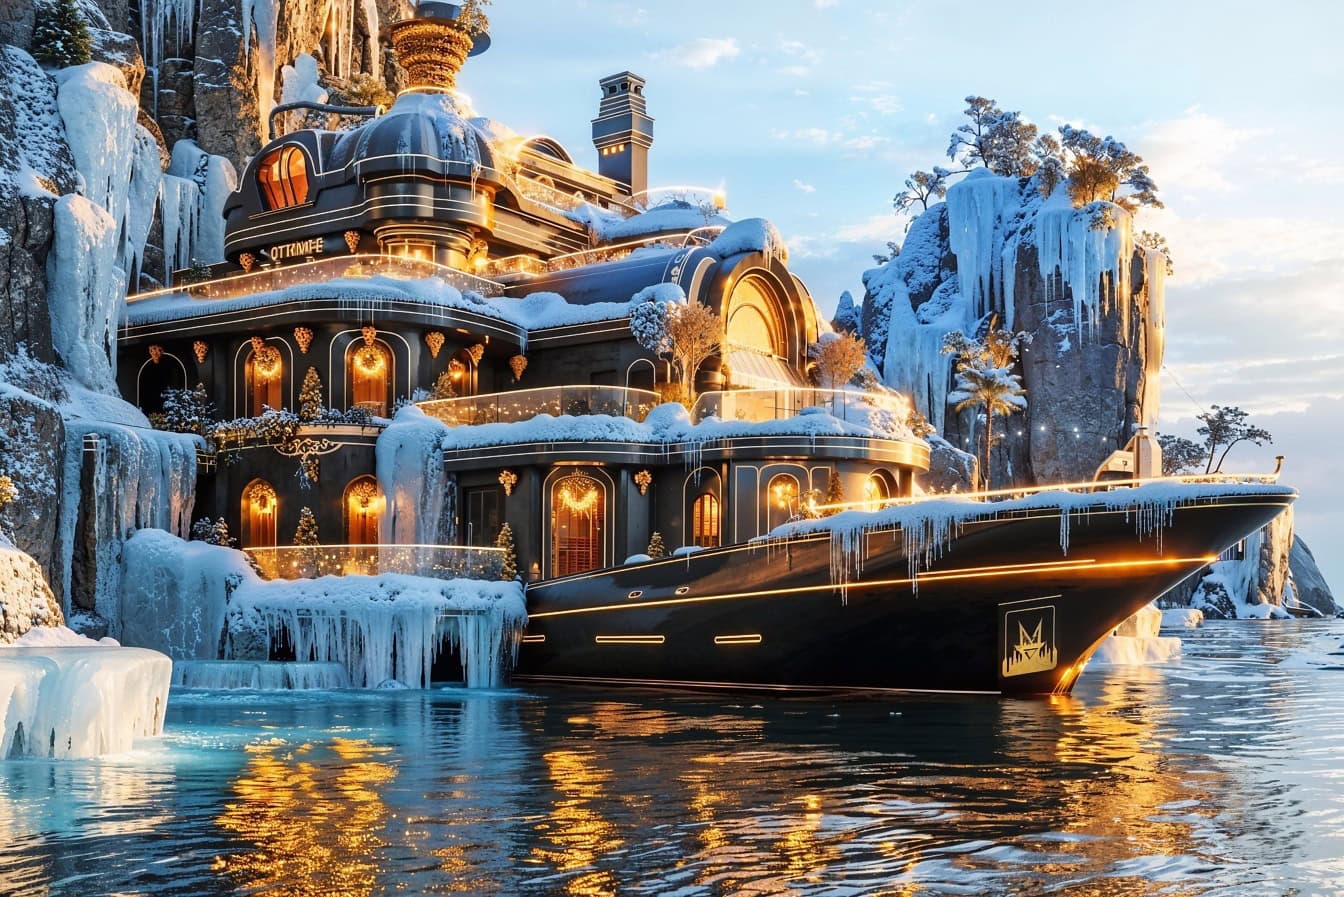 Conceito futurista de um super iate em um ambiente congelado, fotomontagem de um resort de inverno à beira-mar